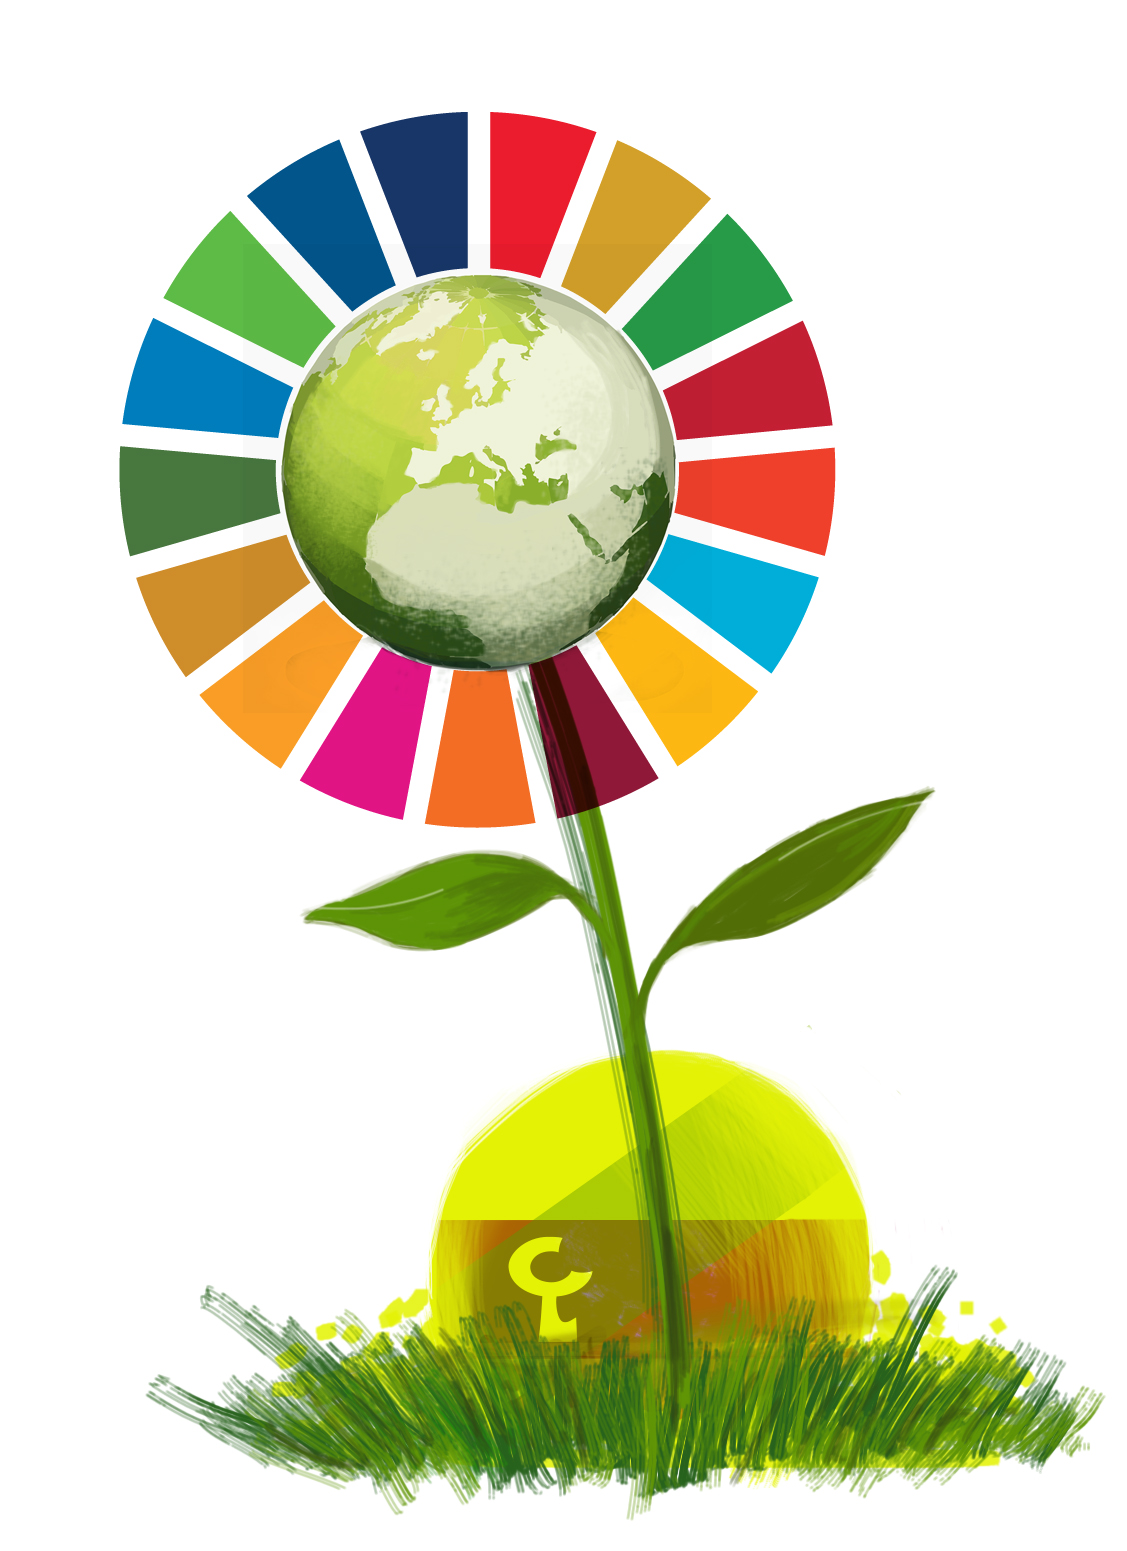 En LABORAL Kutxa nos unimos a los Objetivos de Desarrollo Sostenible de las Naciones Unidas